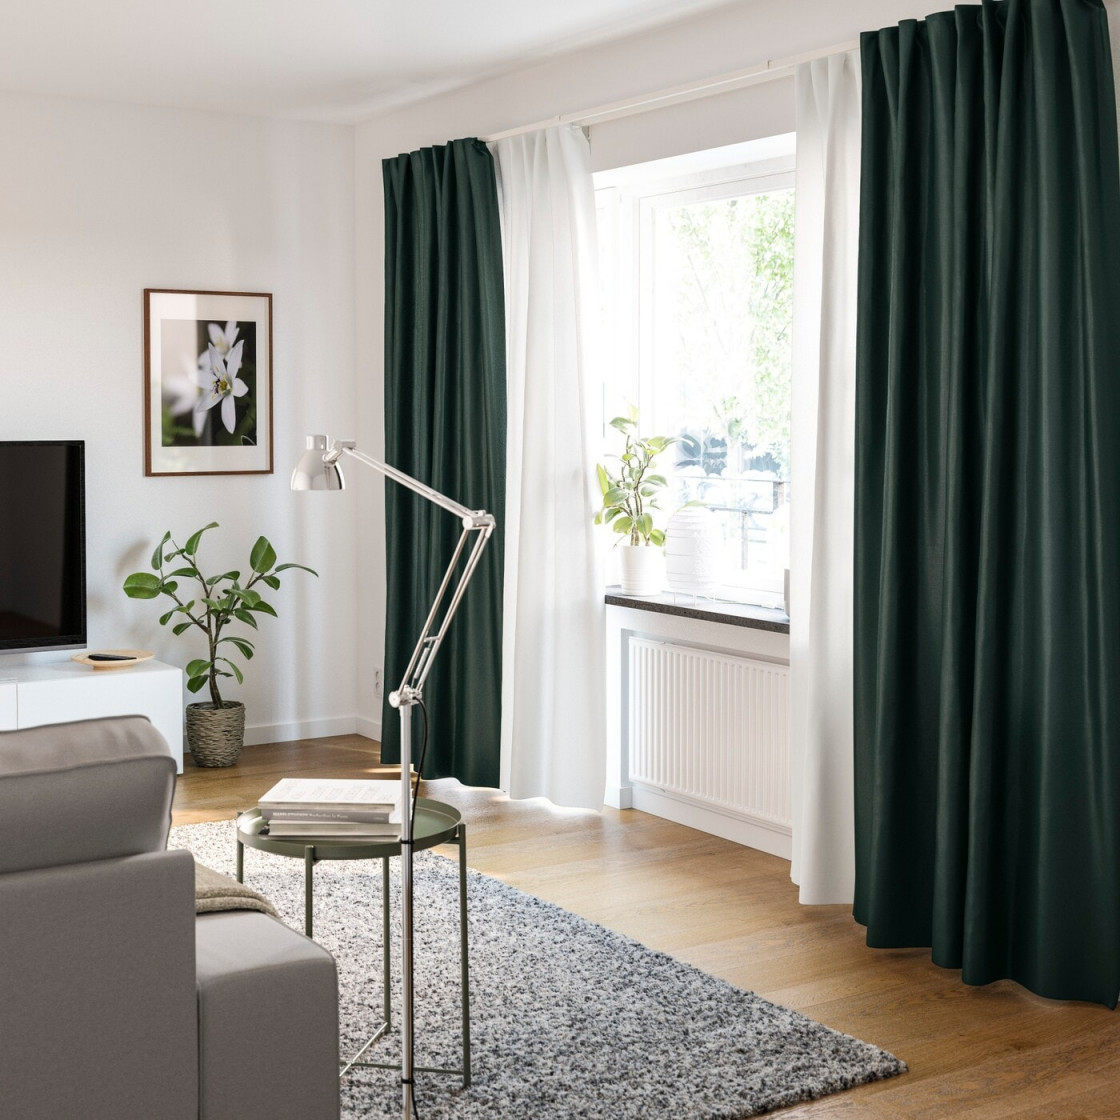 Gardinenideen Inspirationen Für Dein Zuhause  Ikea von Gardinen Ideen Wohnzimmer Bild